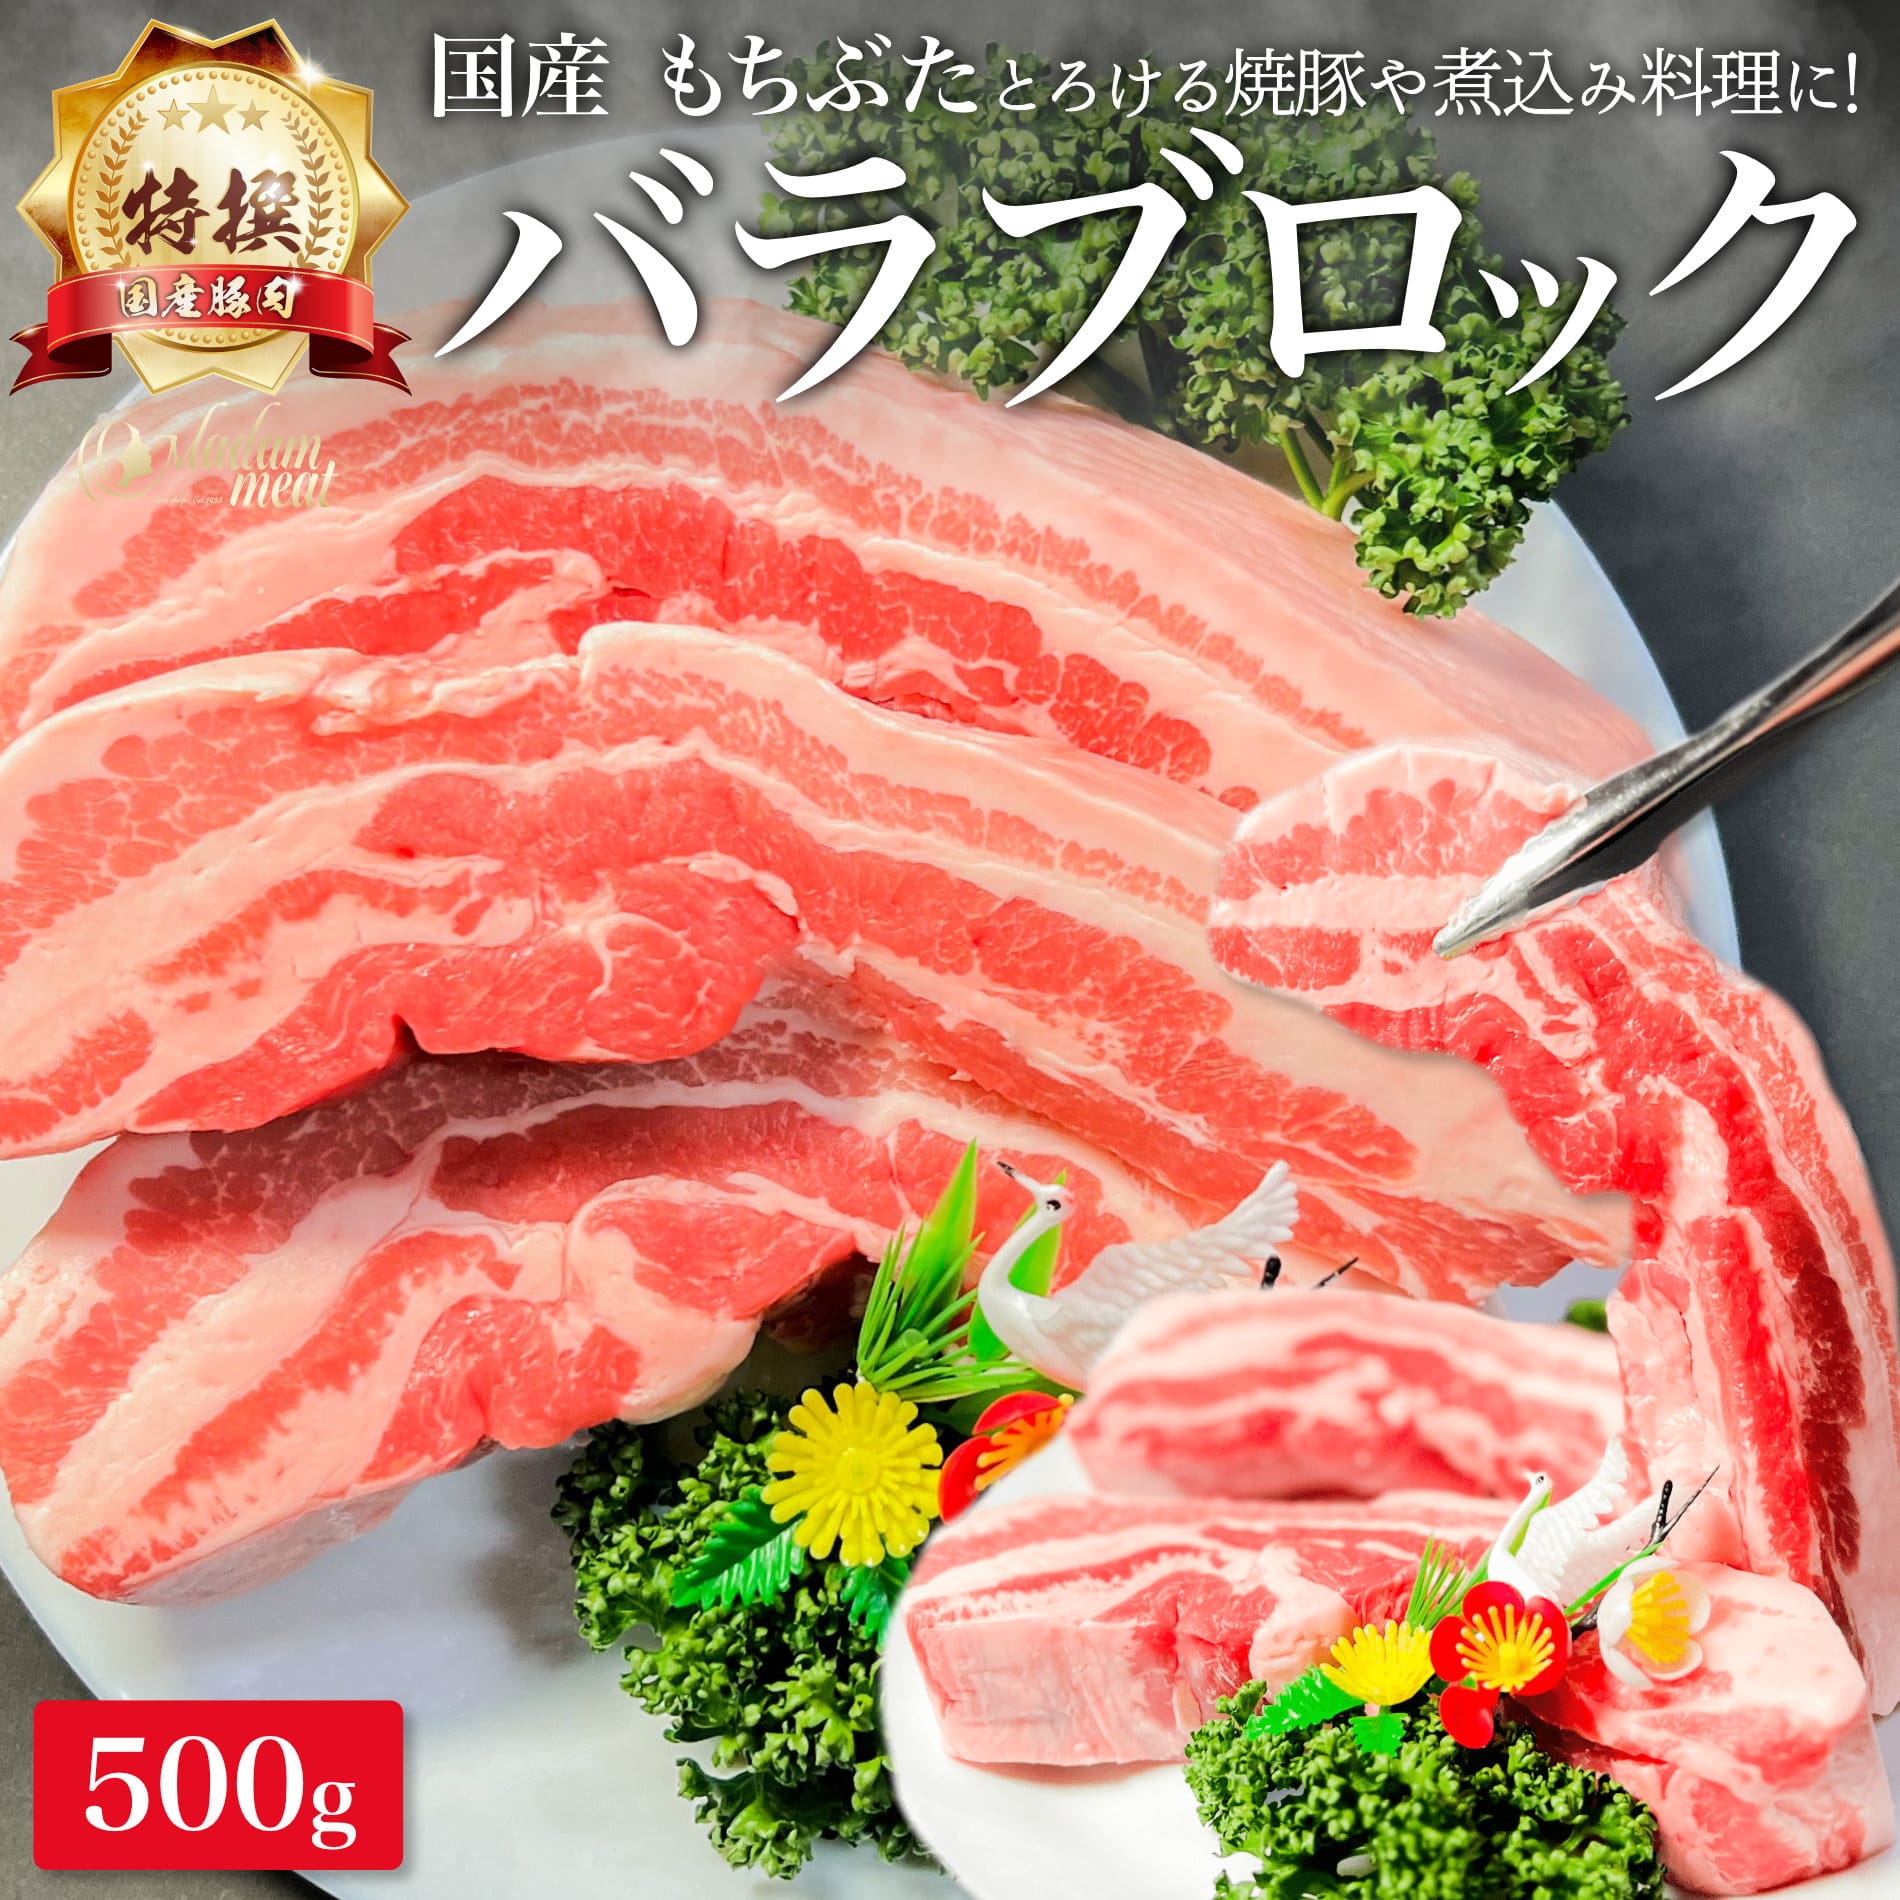 特撰 国産 もちぶた 豚バラ ブロック 500g 豚肉 バラ